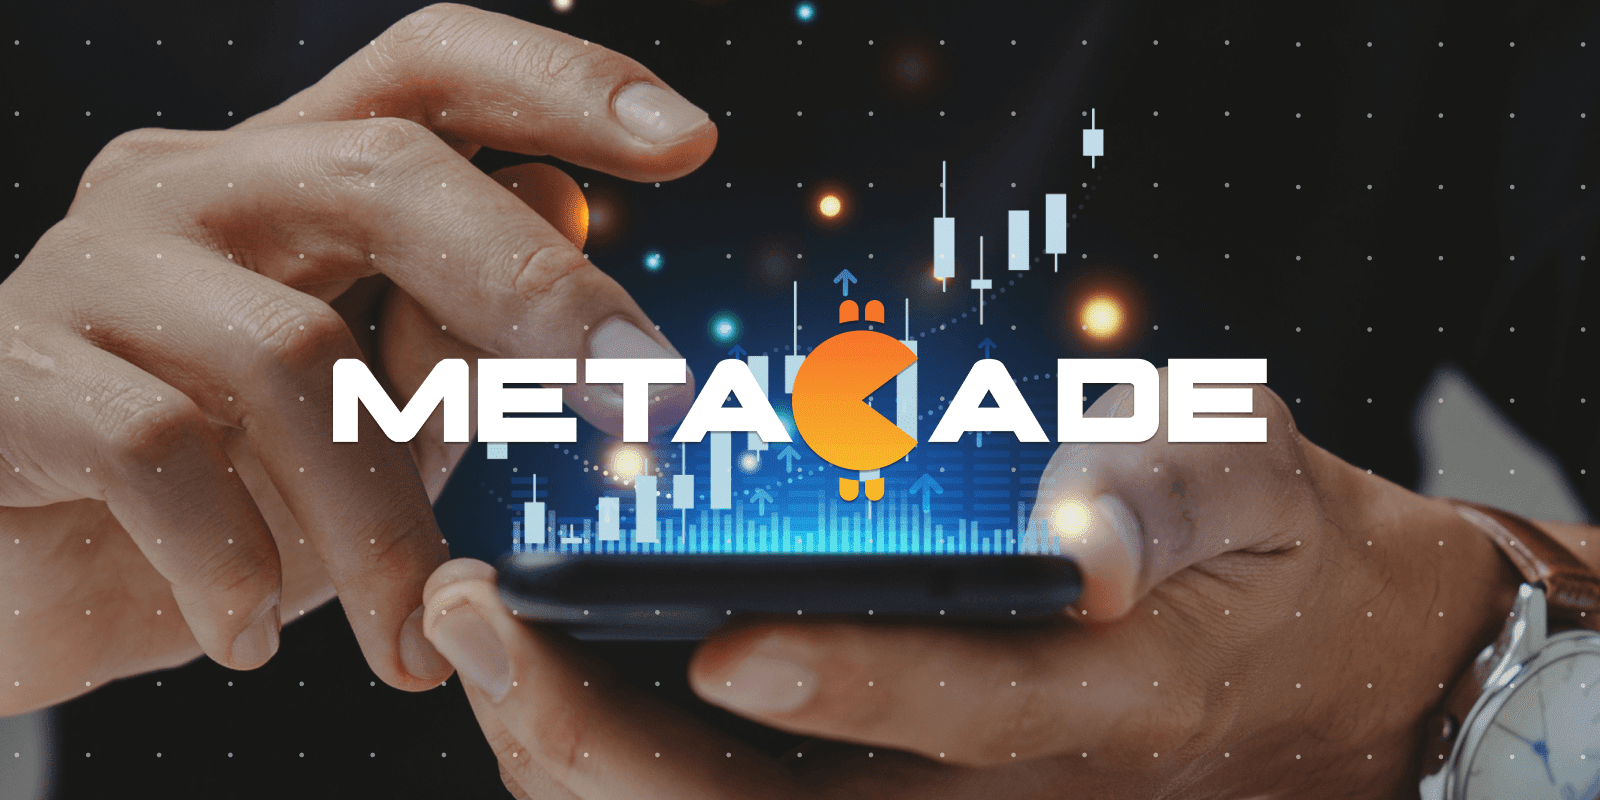 Metacade, ICO terbaik akan datang.